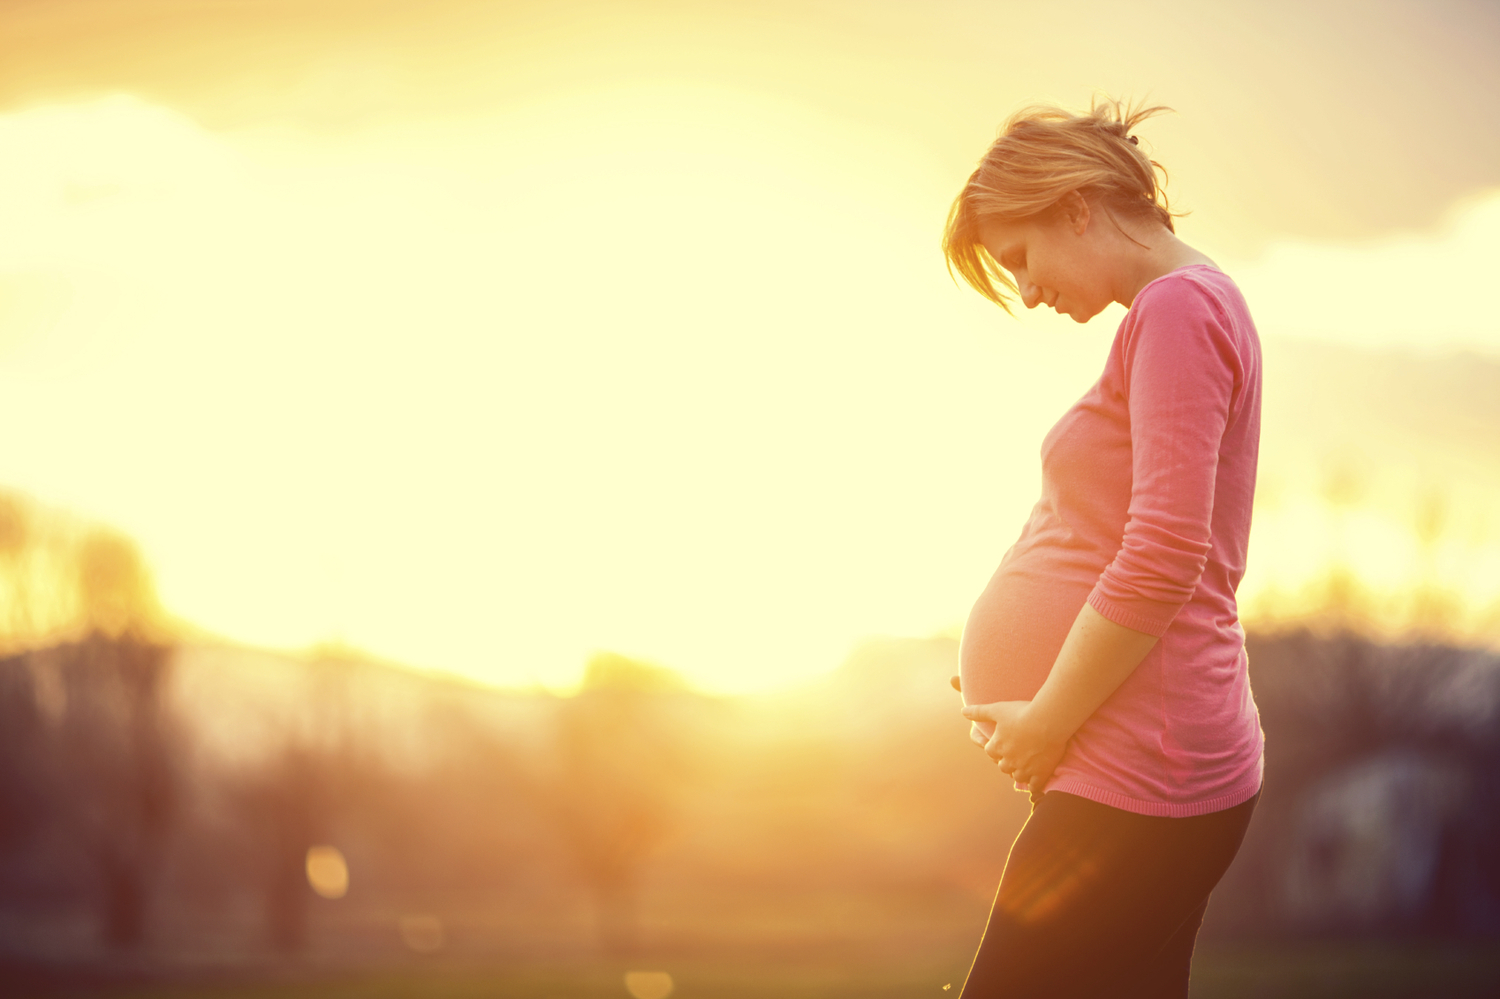 تامین سلامت مادر و جنین در دوران بارداری